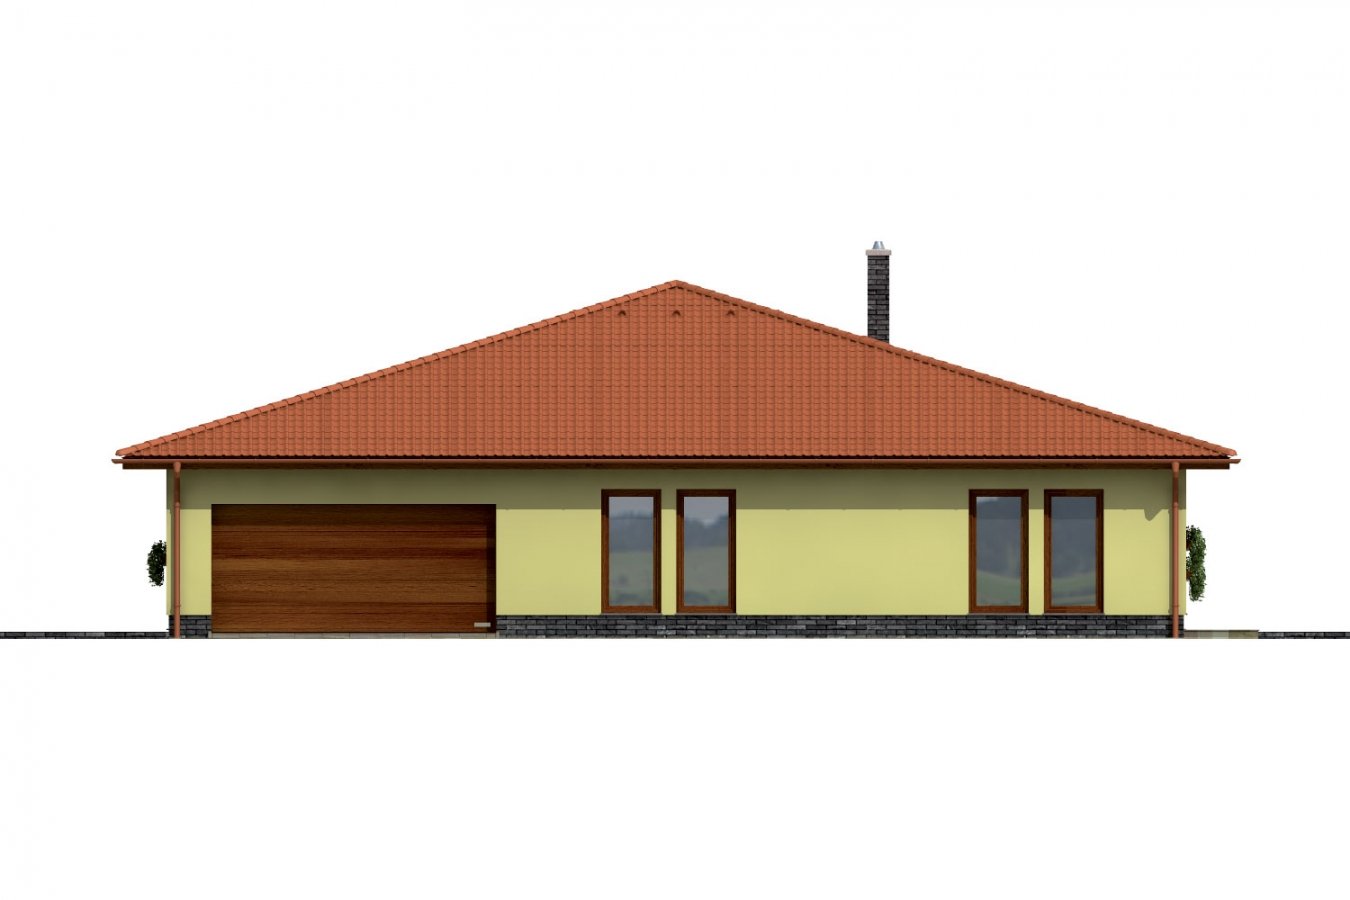 Zrkadlový pohľad 2. - Exkluzivní bungalov s dvěma garážemi.